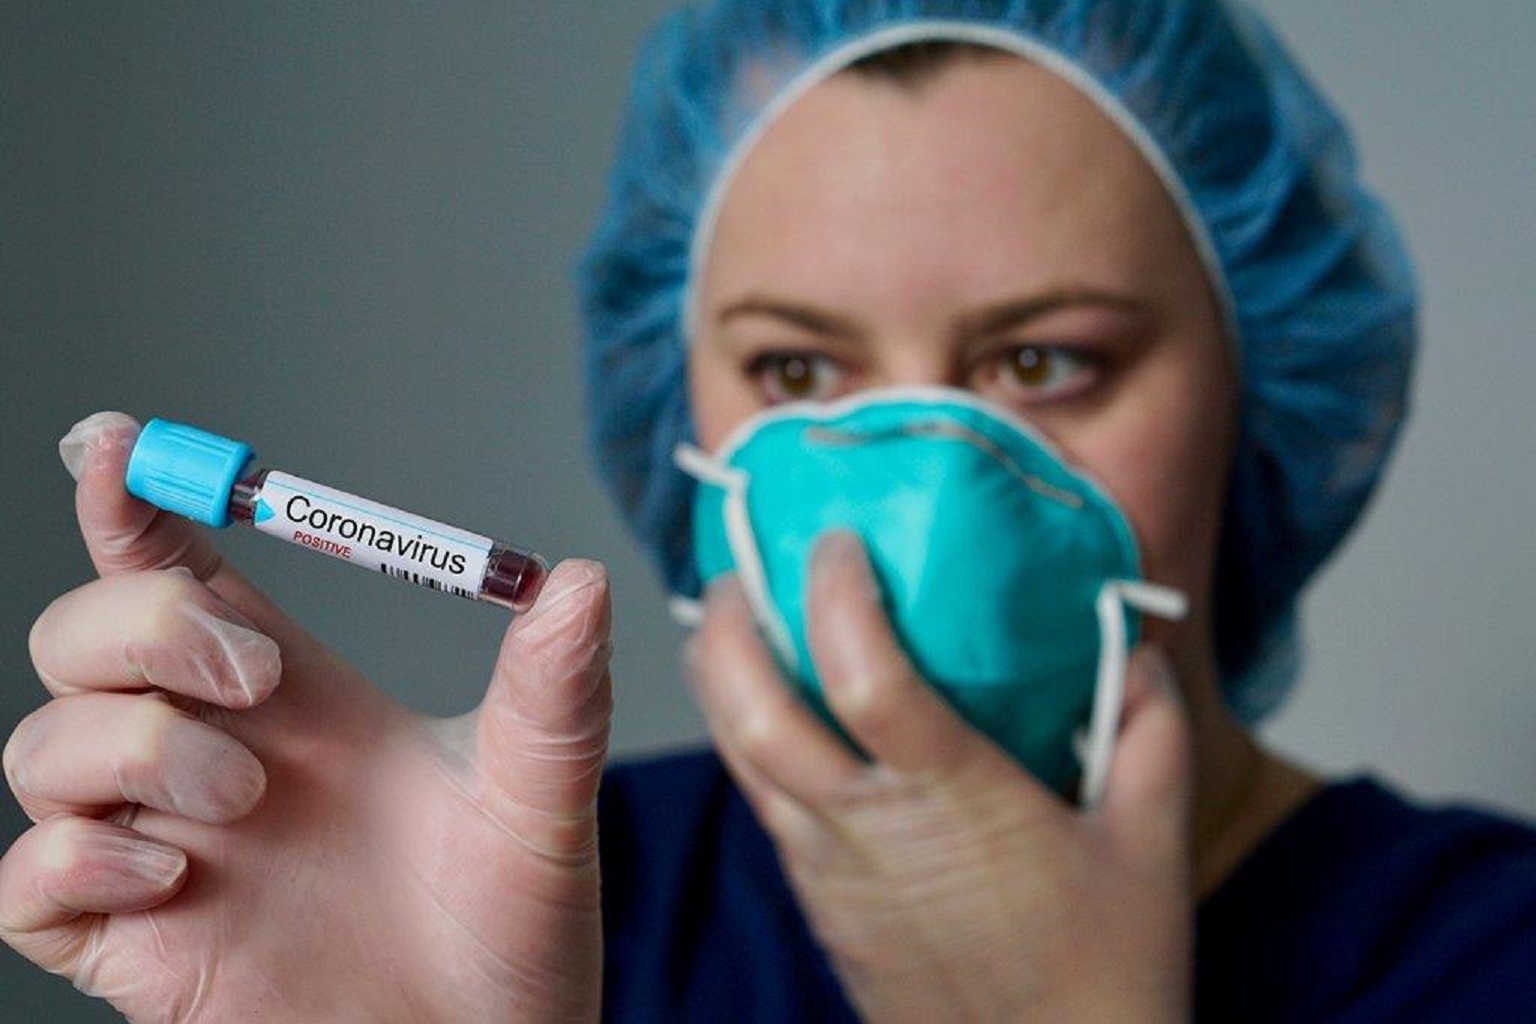 Coronavirus, 12 vittime in Italia: i contagiati salgono a oltre 300